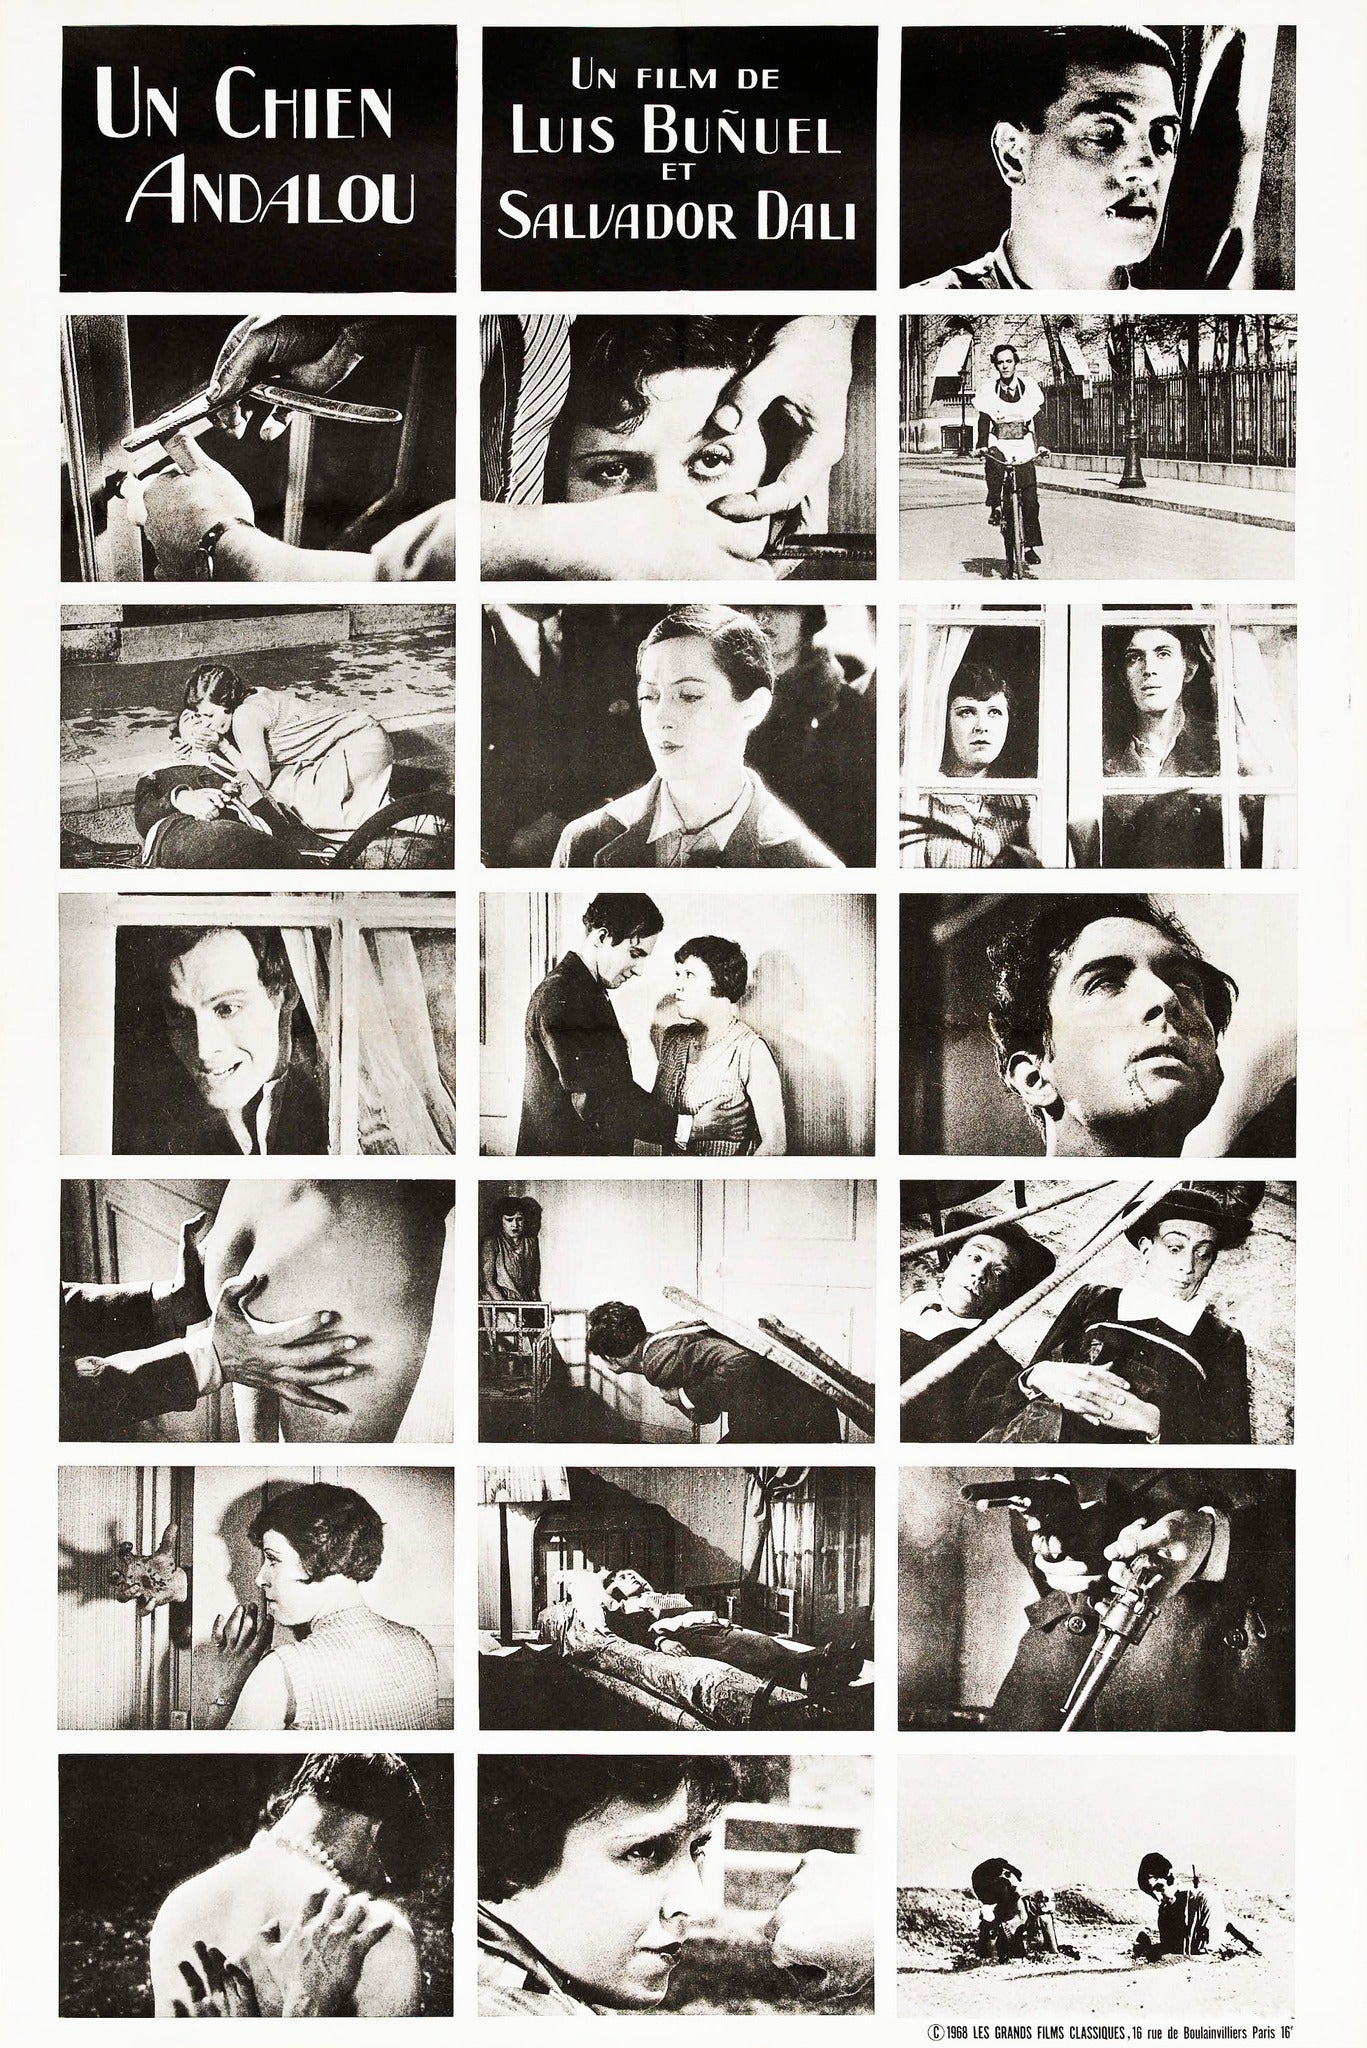 [FLASH SALE] Cuadros del cine de Luis Buñuel (desde uno por S/ 60 y dos por S/ 90)